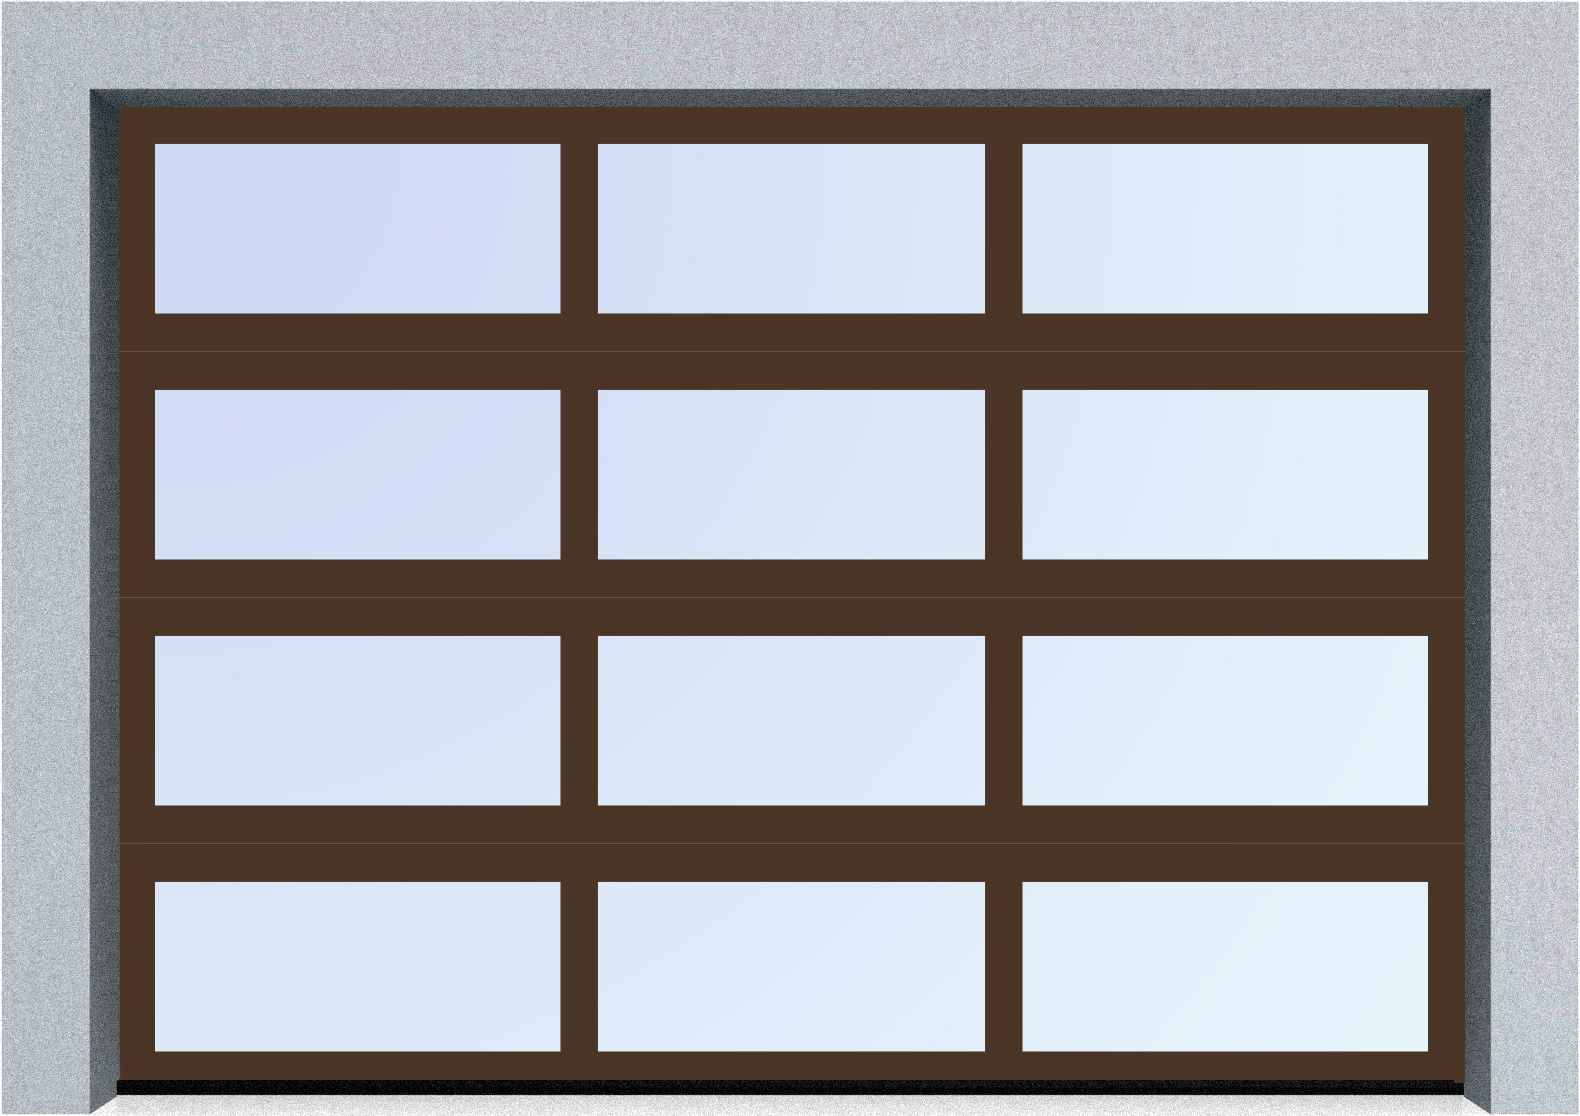  Автоматические секционные панорамные ворота серии AluTrend (АЛП) 3875х4500 стандартные цвета, фото 6 